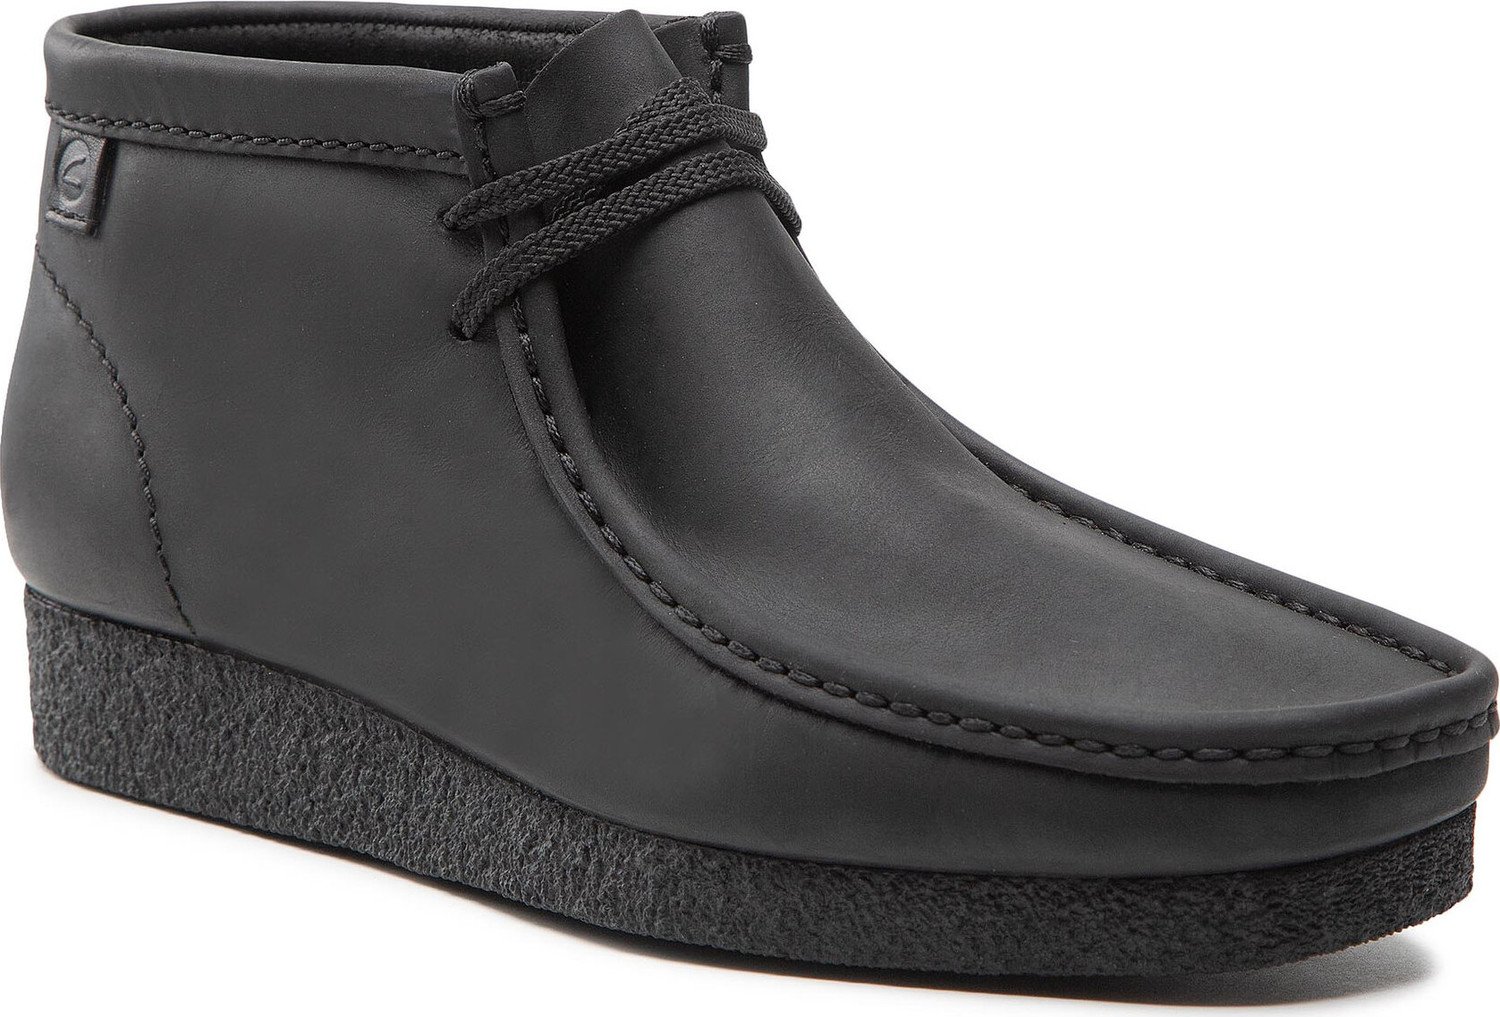 Kotníková obuv Clarks Shacre Boot 261594407 Black Leather